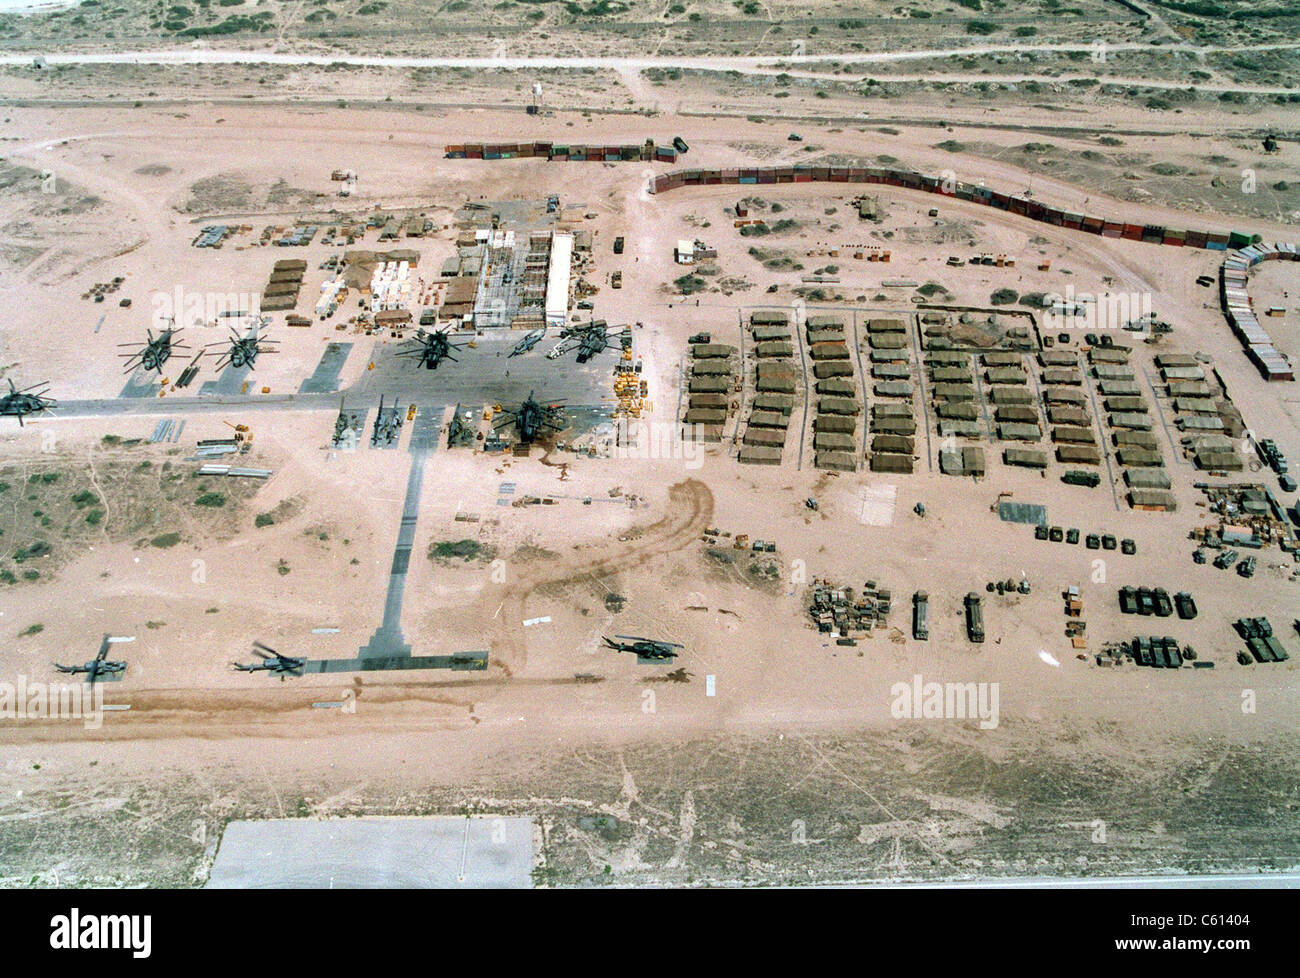 Basis der Vereinten Nationen meist US Marinekräfte in Somalia entstand auf einem verlassenen sowjetischen Flugplatz in Mogadischu. Es hatte eine Mauer von shipping Container oben rechts, um zufällige Scharfschützen zu vereiteln. 25. Februar 1993. (BSLOC 2011 3 4) Stockfoto